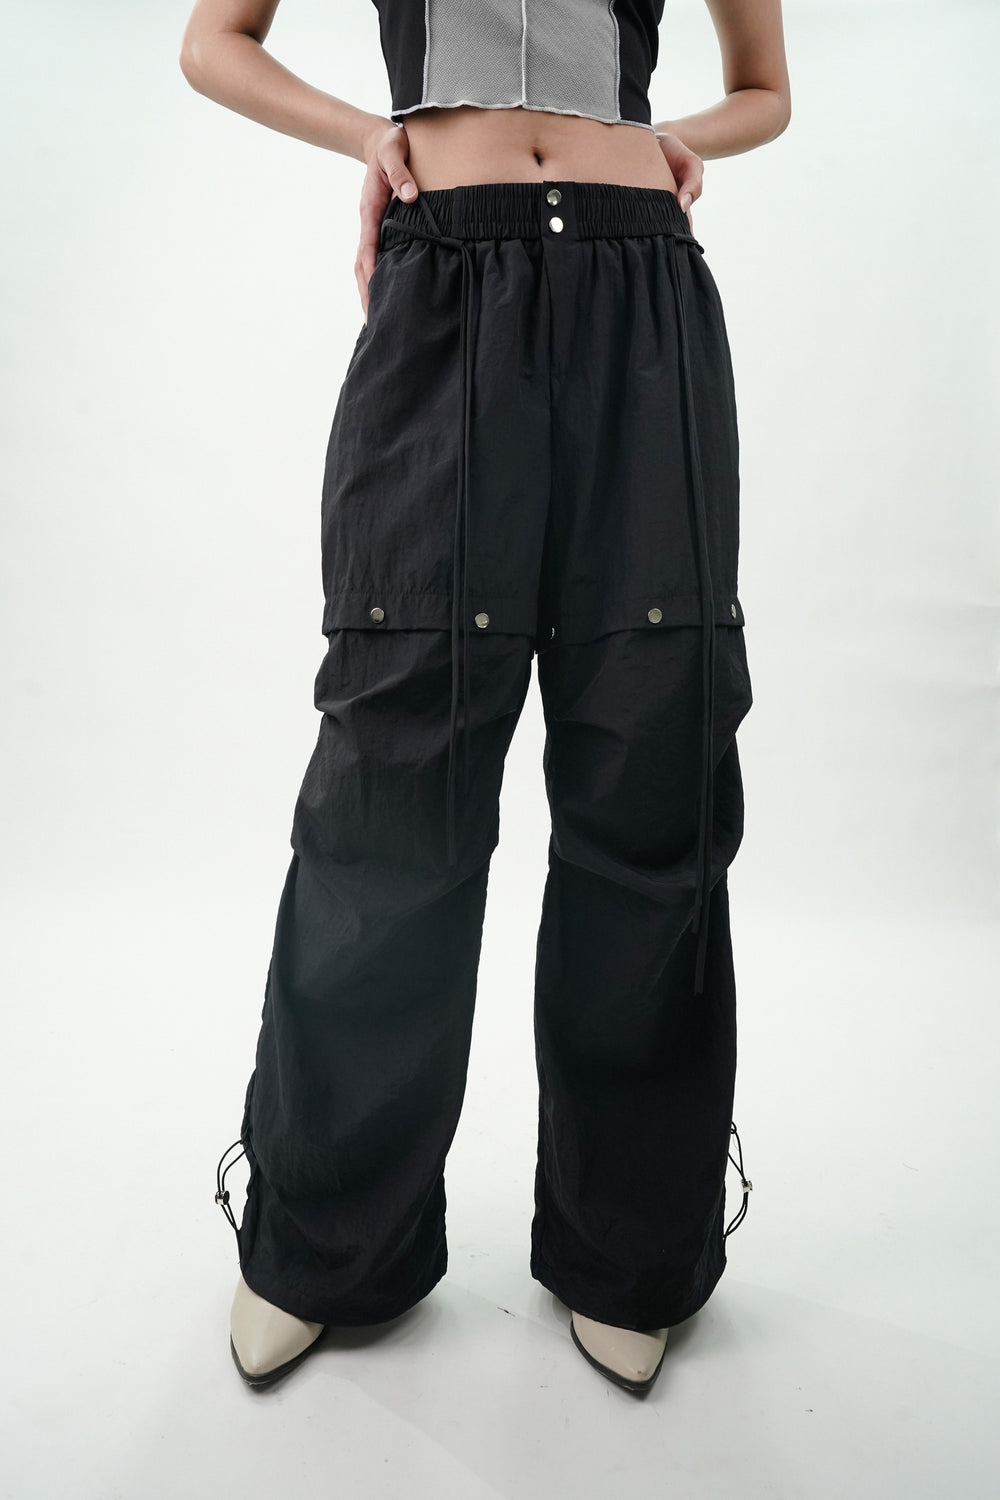 Women's streetwear cargo pants